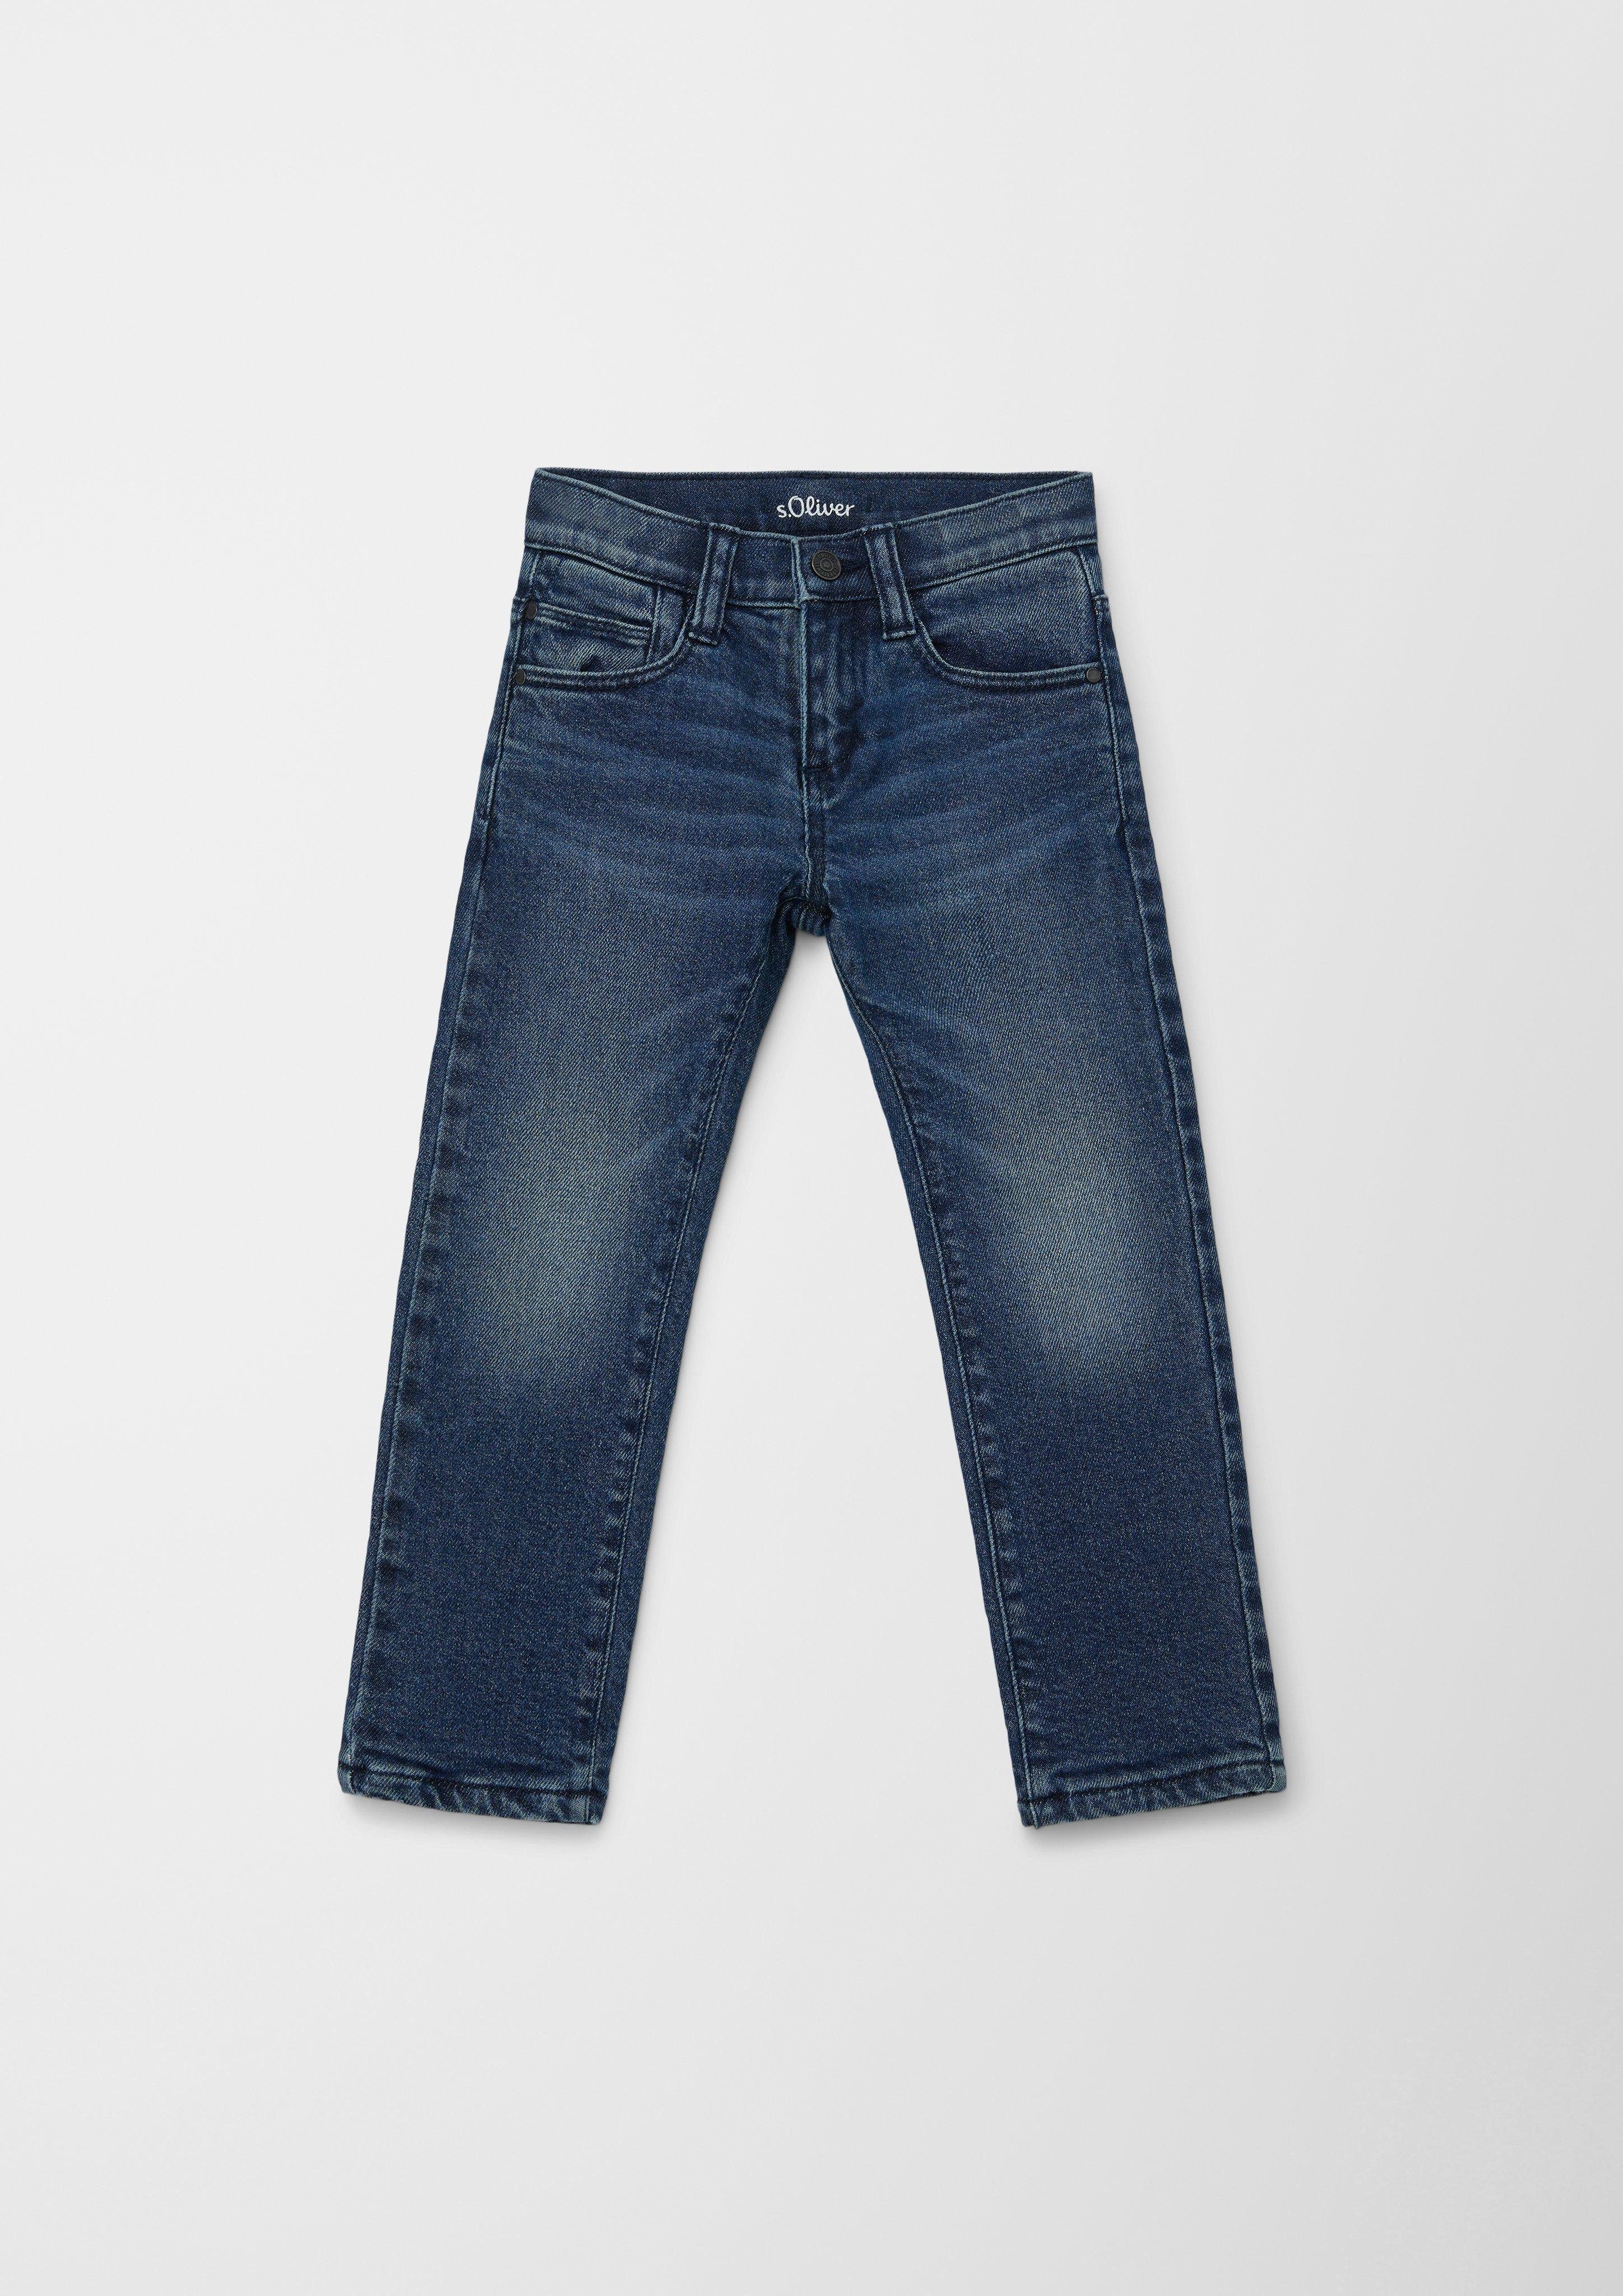 s.Oliver Junior s.Oliver Fit / Waschung Regular / Leg Rise / Straight Pelle Jeans Gefütterte Mid 5-Pocket-Jeans